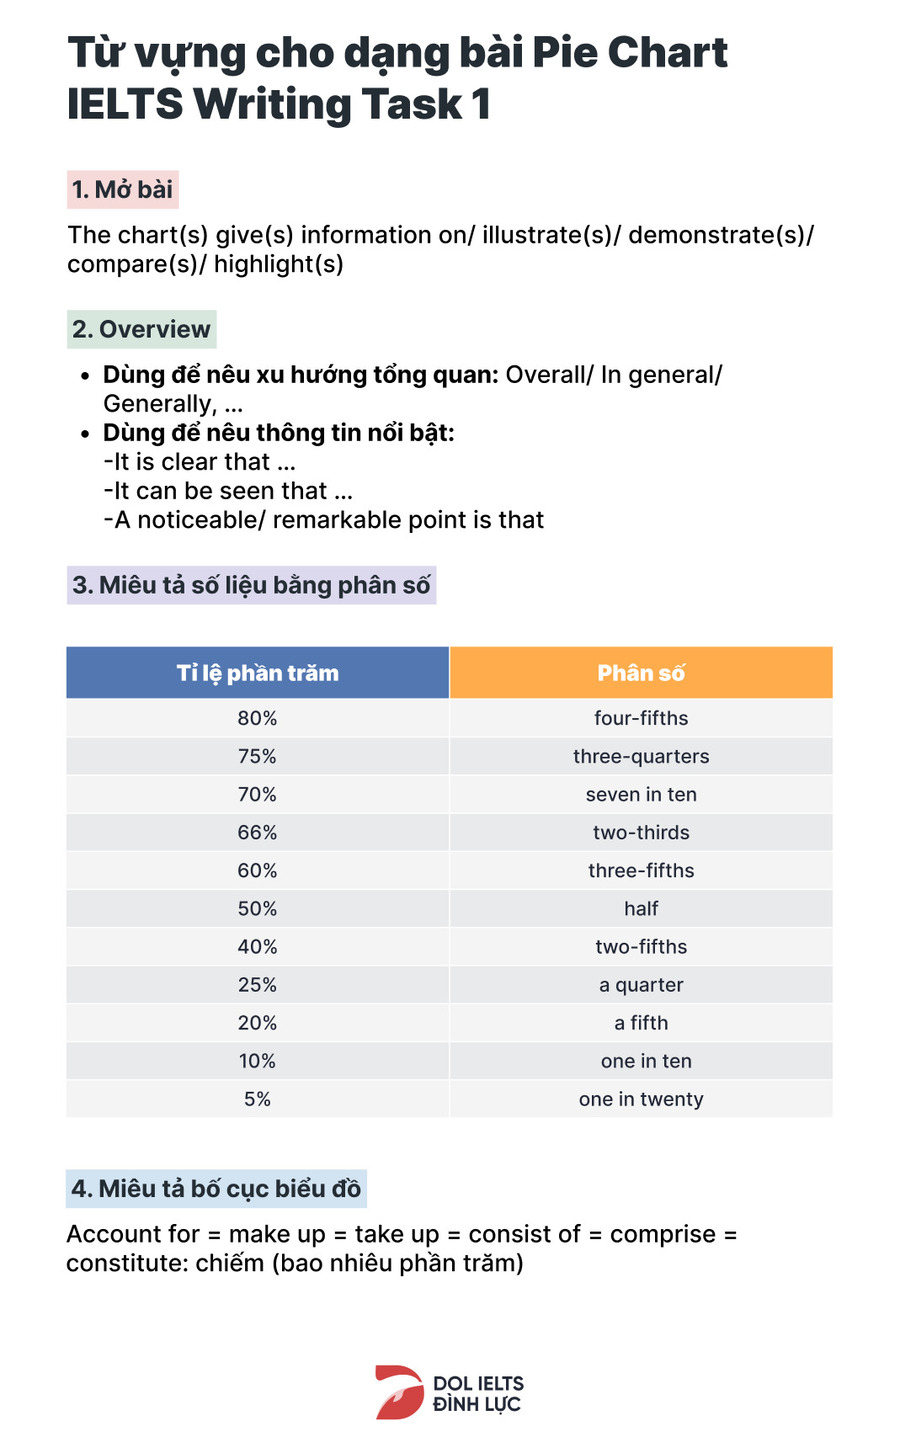 Từ vựng thông dụng cho dạng bài IELTS Writing task 1 Pie Chart